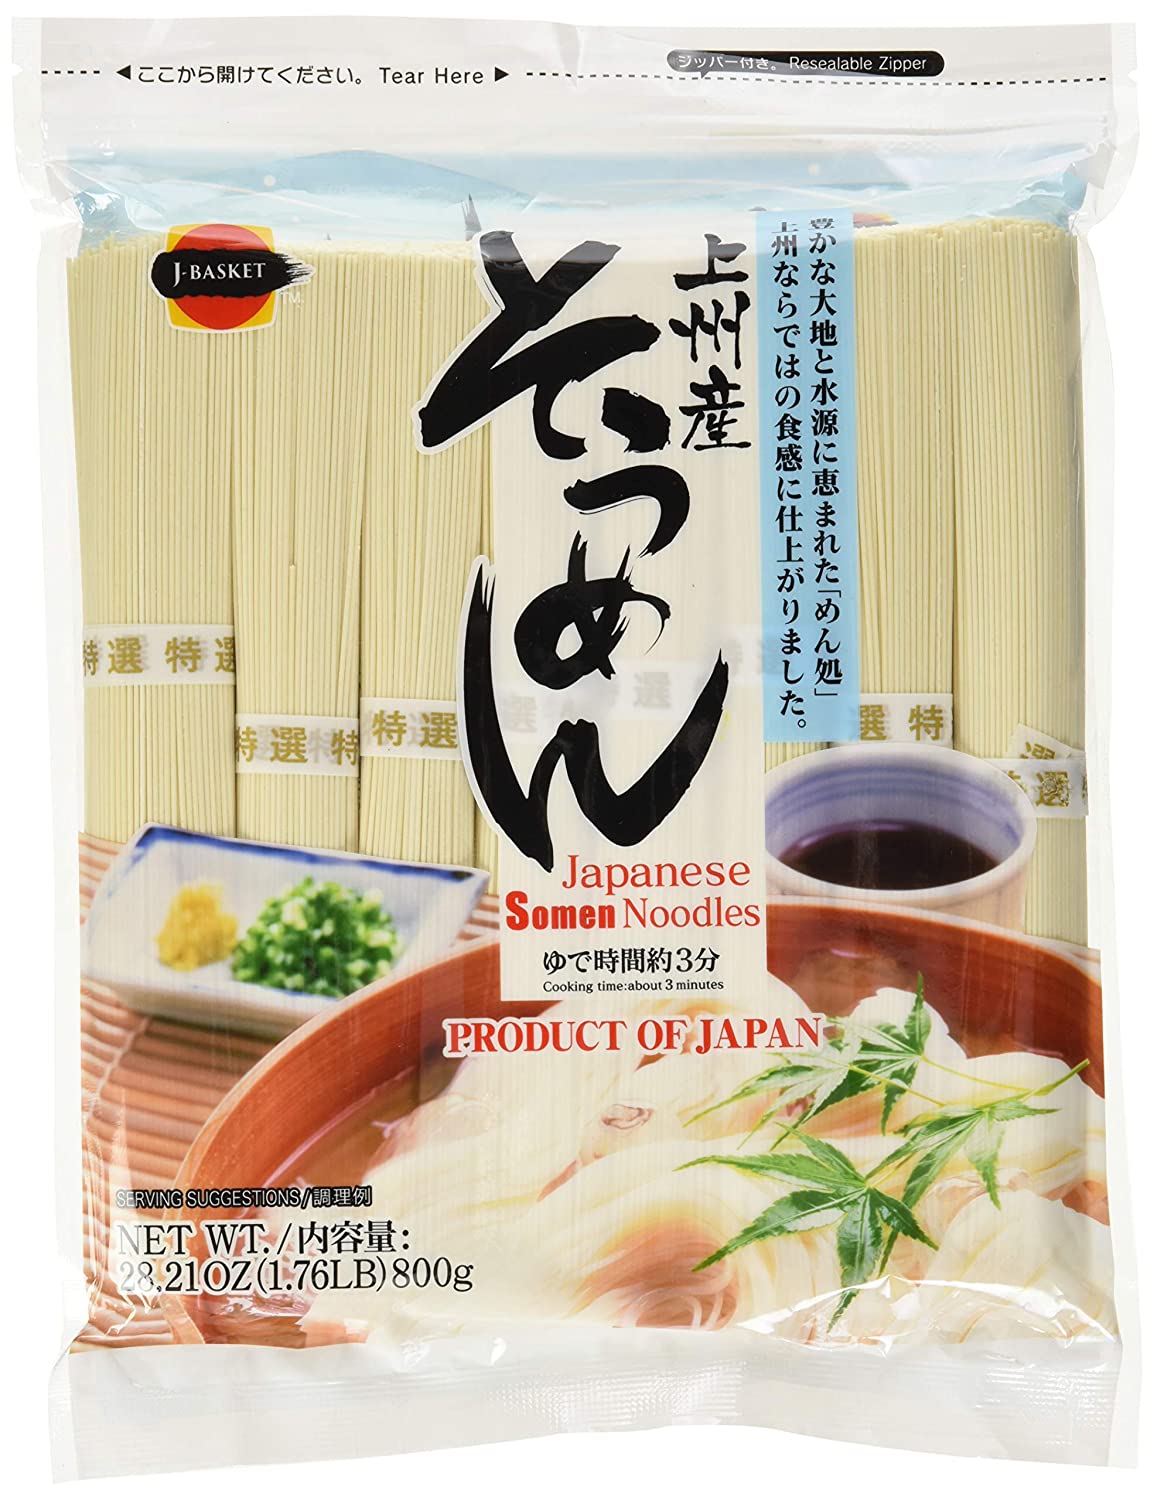 Best noodles for yakisoba- Hime Chukamen